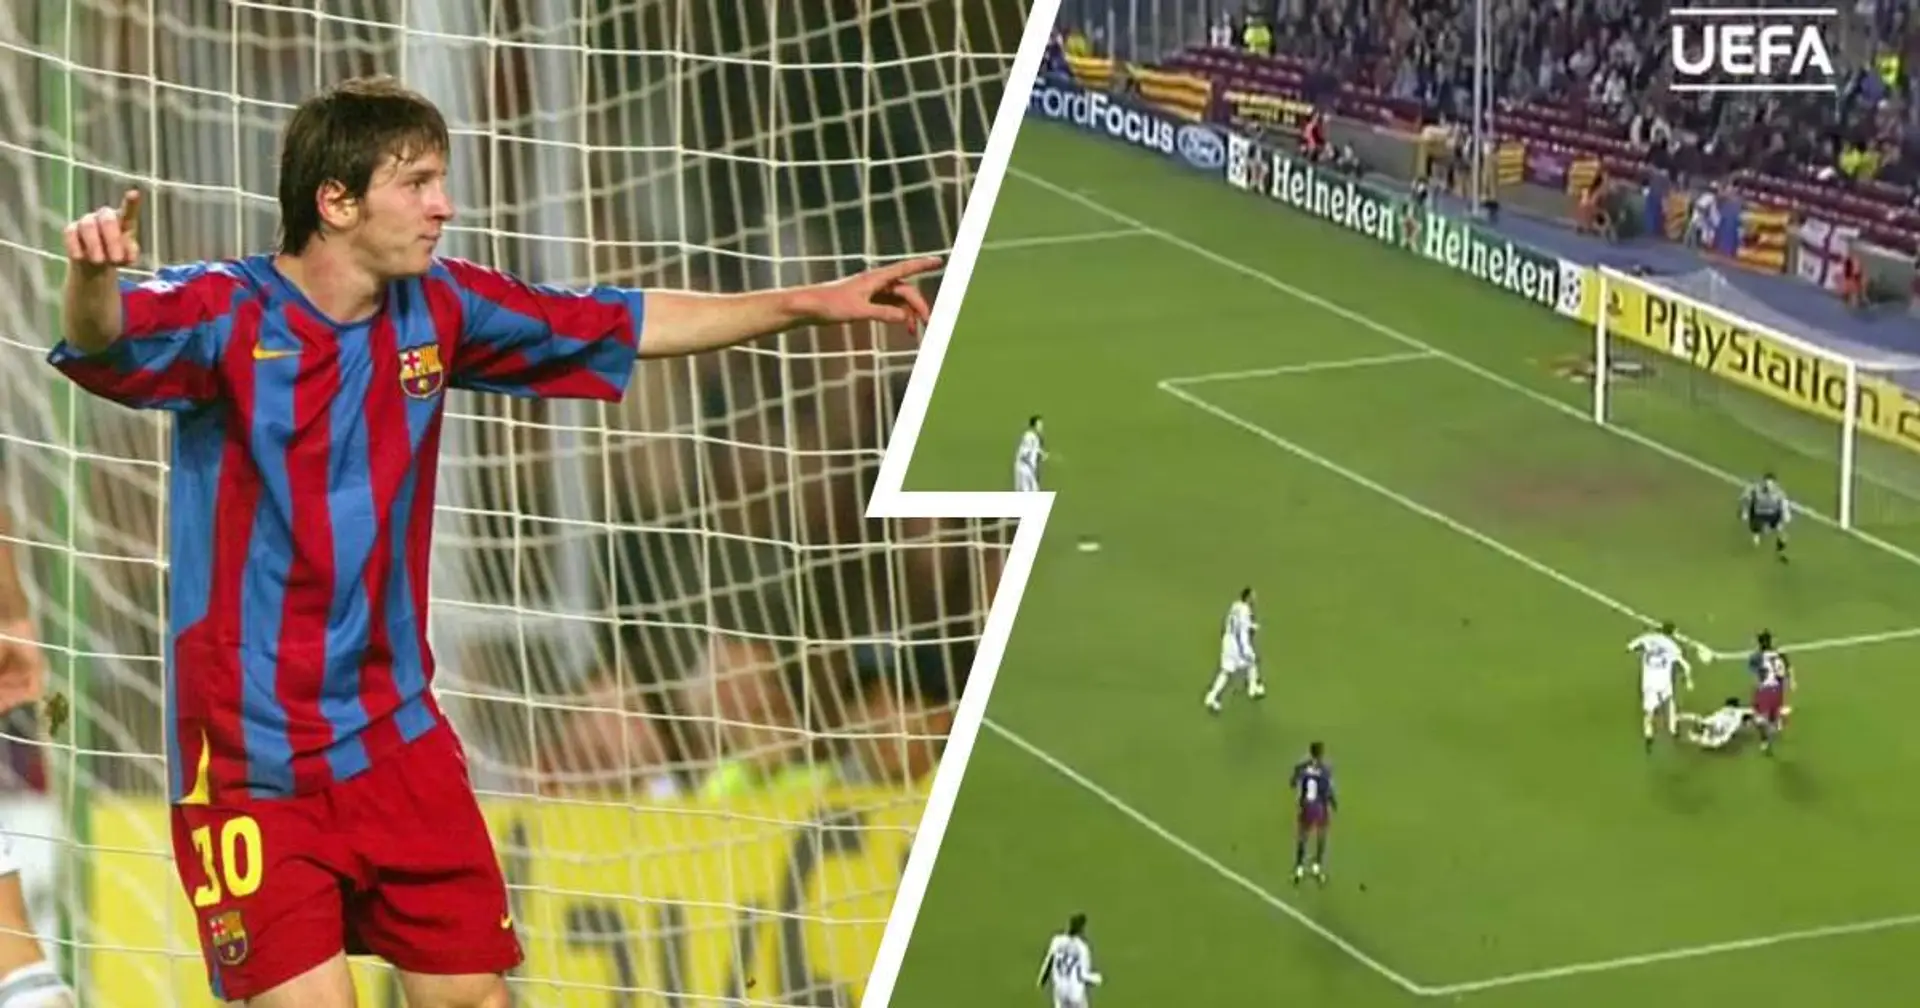 Derribando defensas desde sus inicios: Messi se estrenó como goleador en Champions hace justo 15 años (vídeo)